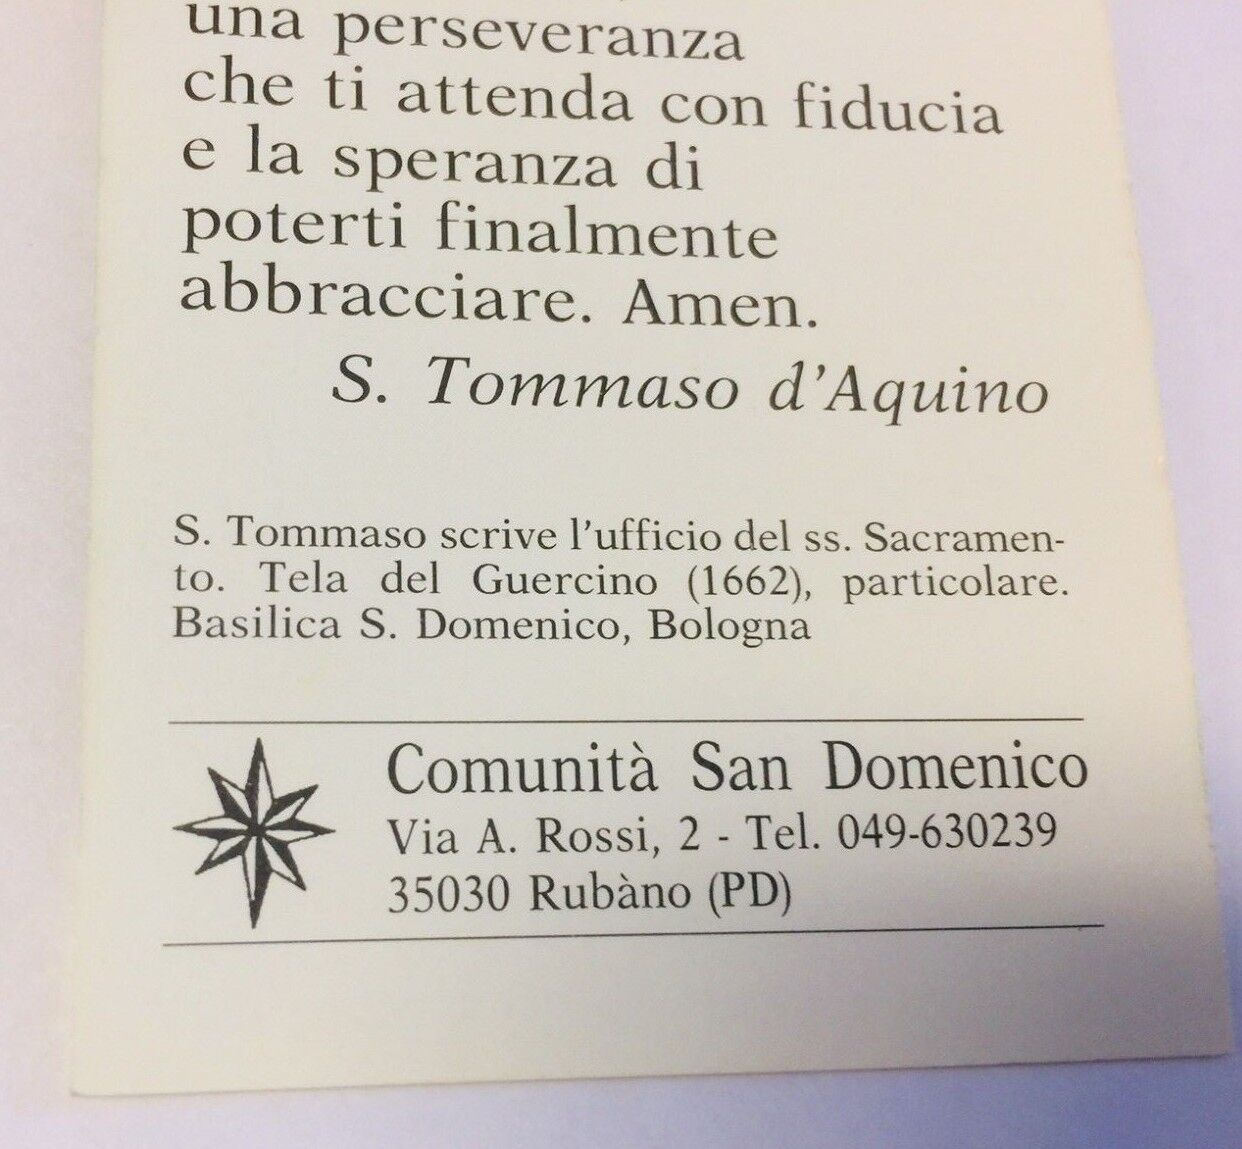 Saint Thomas Aquinas Authentic Prayer Card, PRAYER IN ITALIAN, New From Italy